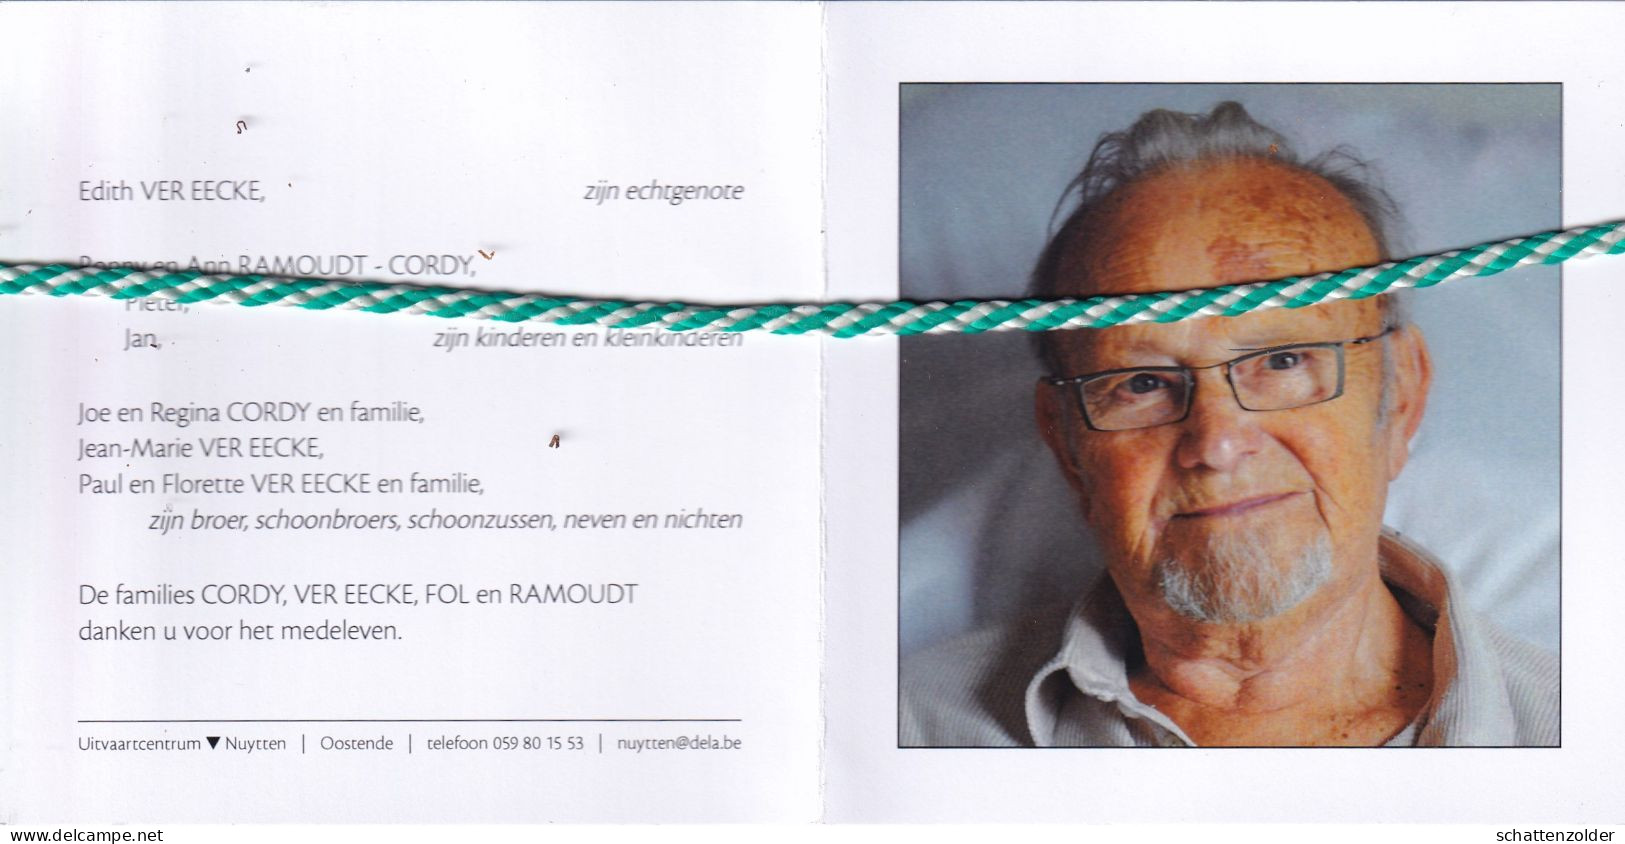 Roland Cordy-Ver Eecke, 1931, Oostende 2010. Foto - Todesanzeige